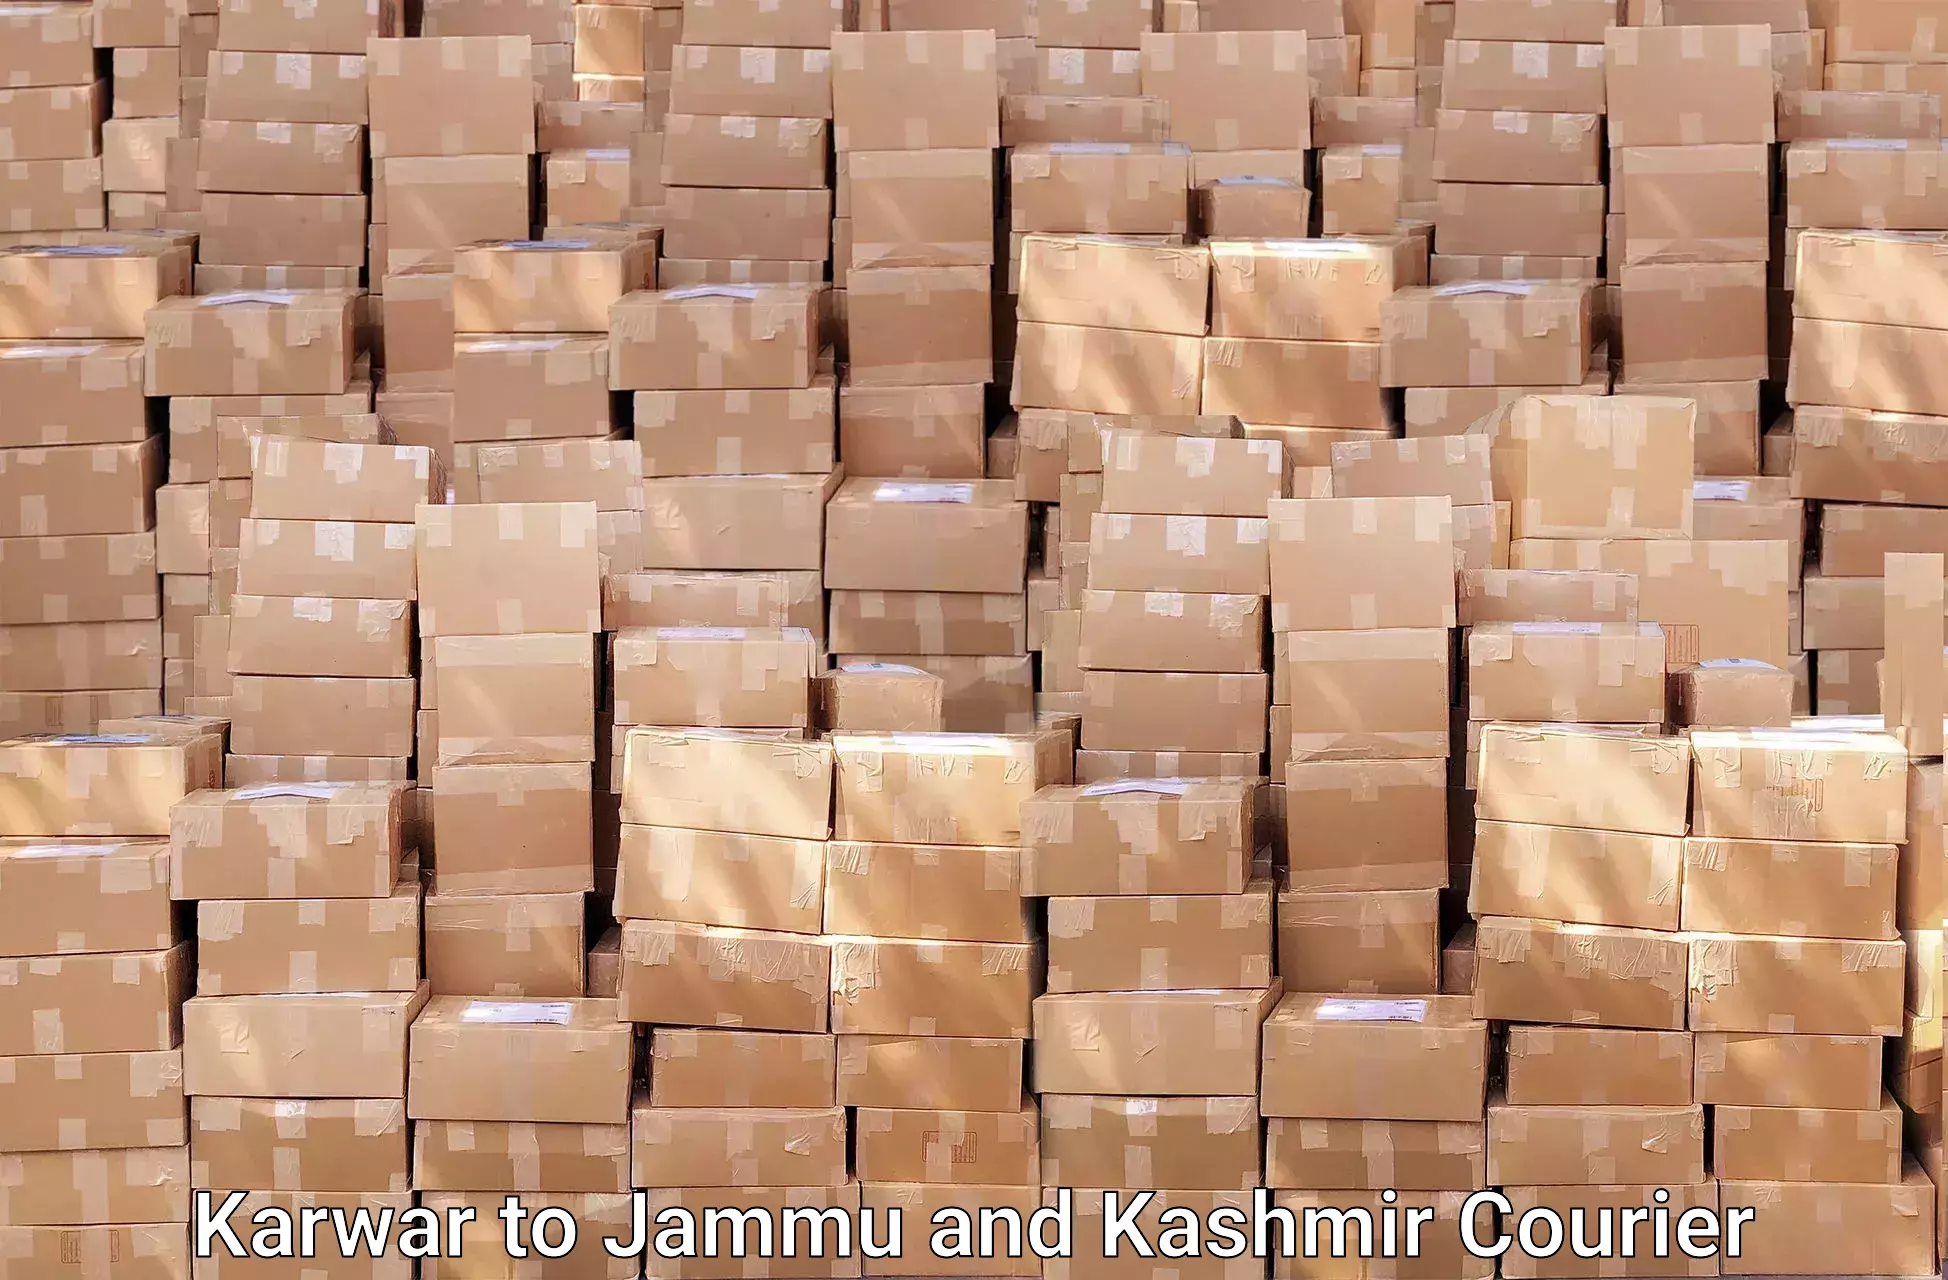 Furniture moving service Karwar to Jammu